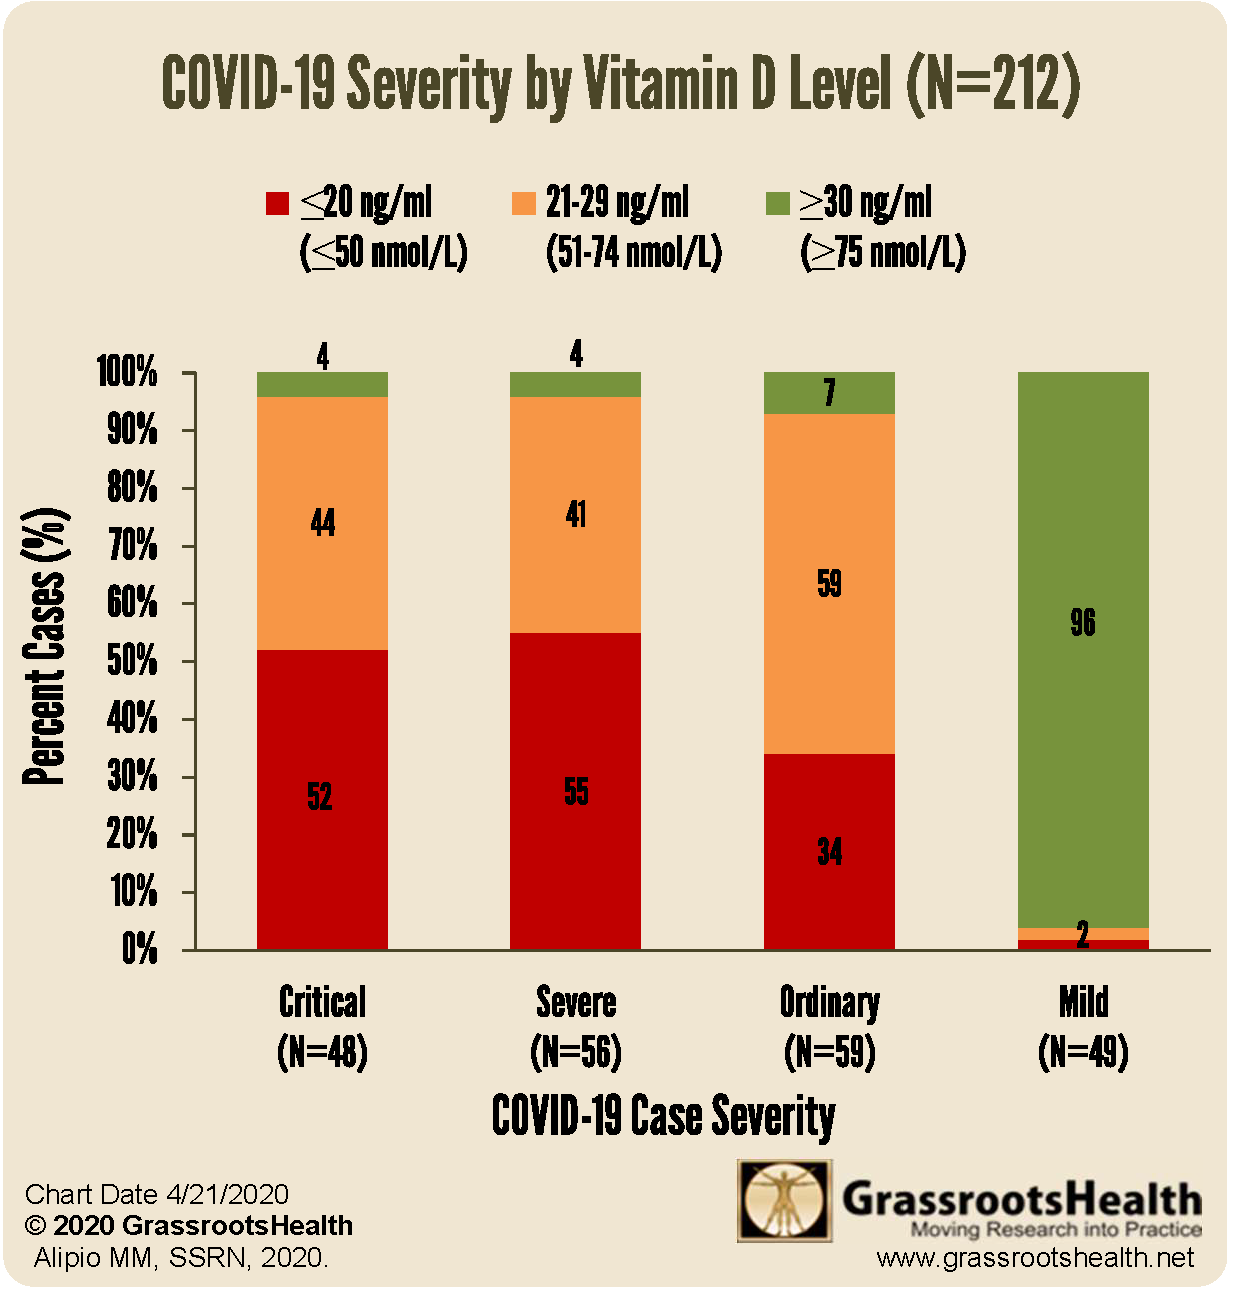 Covid-19: Badanie na 212 pacjentach wykazały znaczne niedobory witaminy D [ENGLISH] Vit D COVID Severity 0421